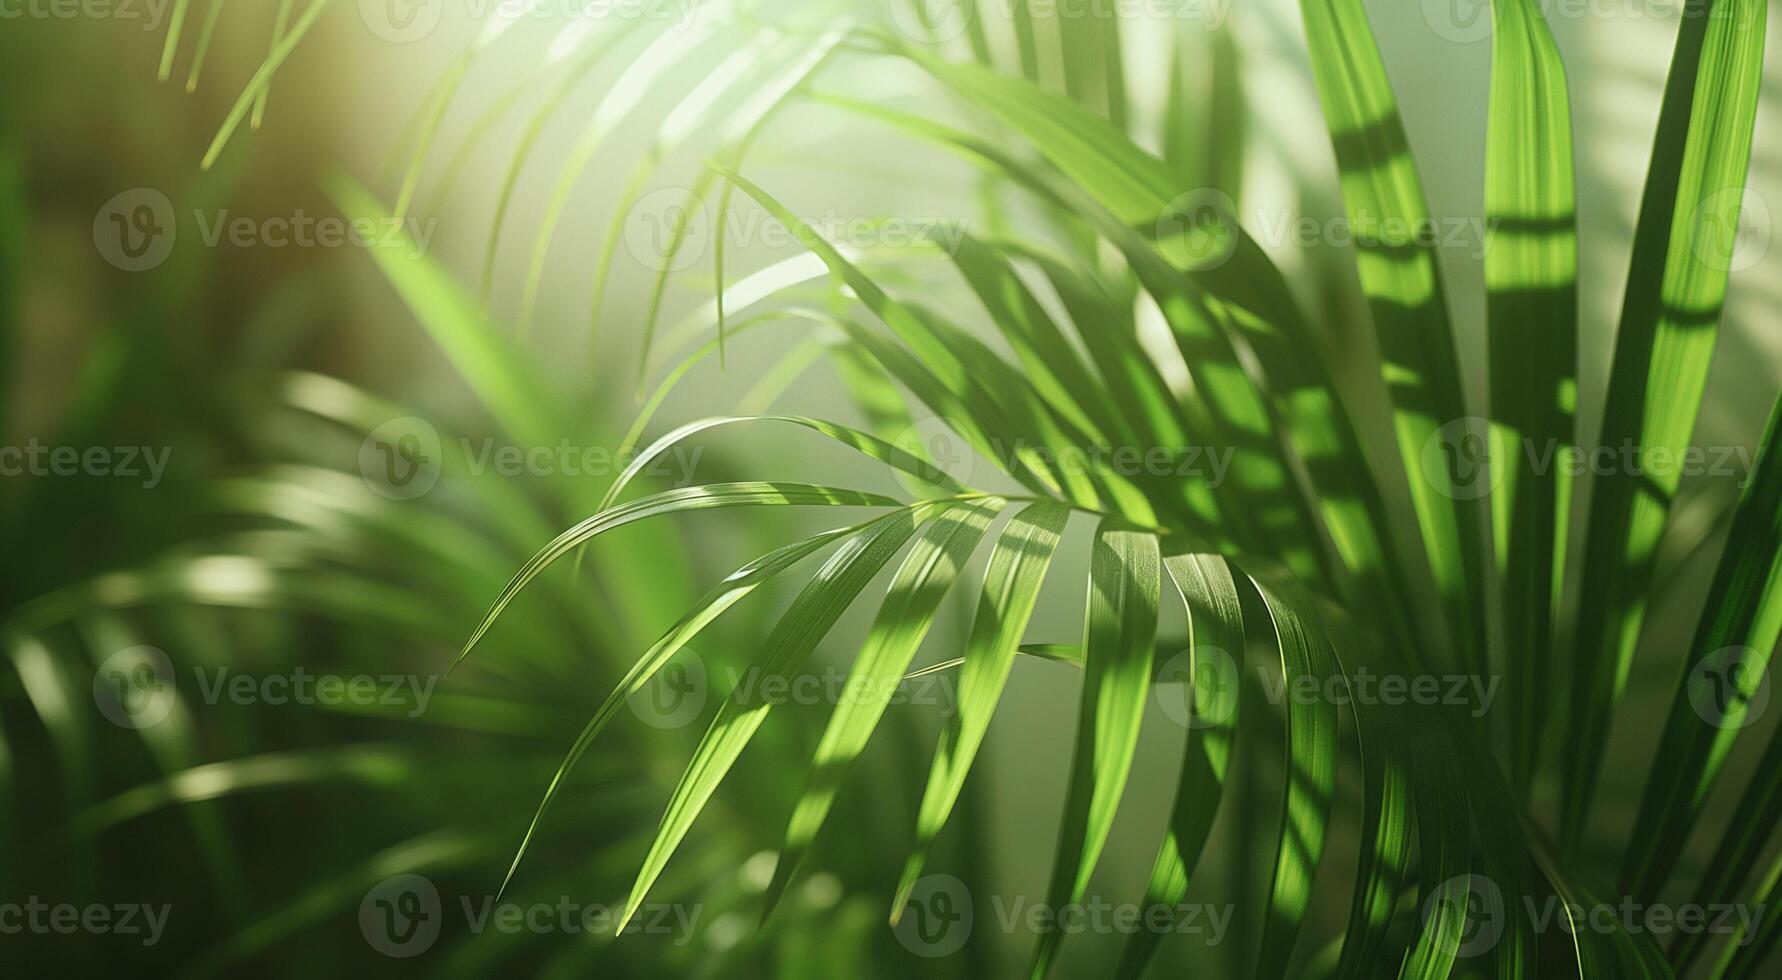 ai gegenereerd weelderig groen palm bladeren genieten in zacht zonlicht, beeltenis een rustig natuurlijk instelling foto